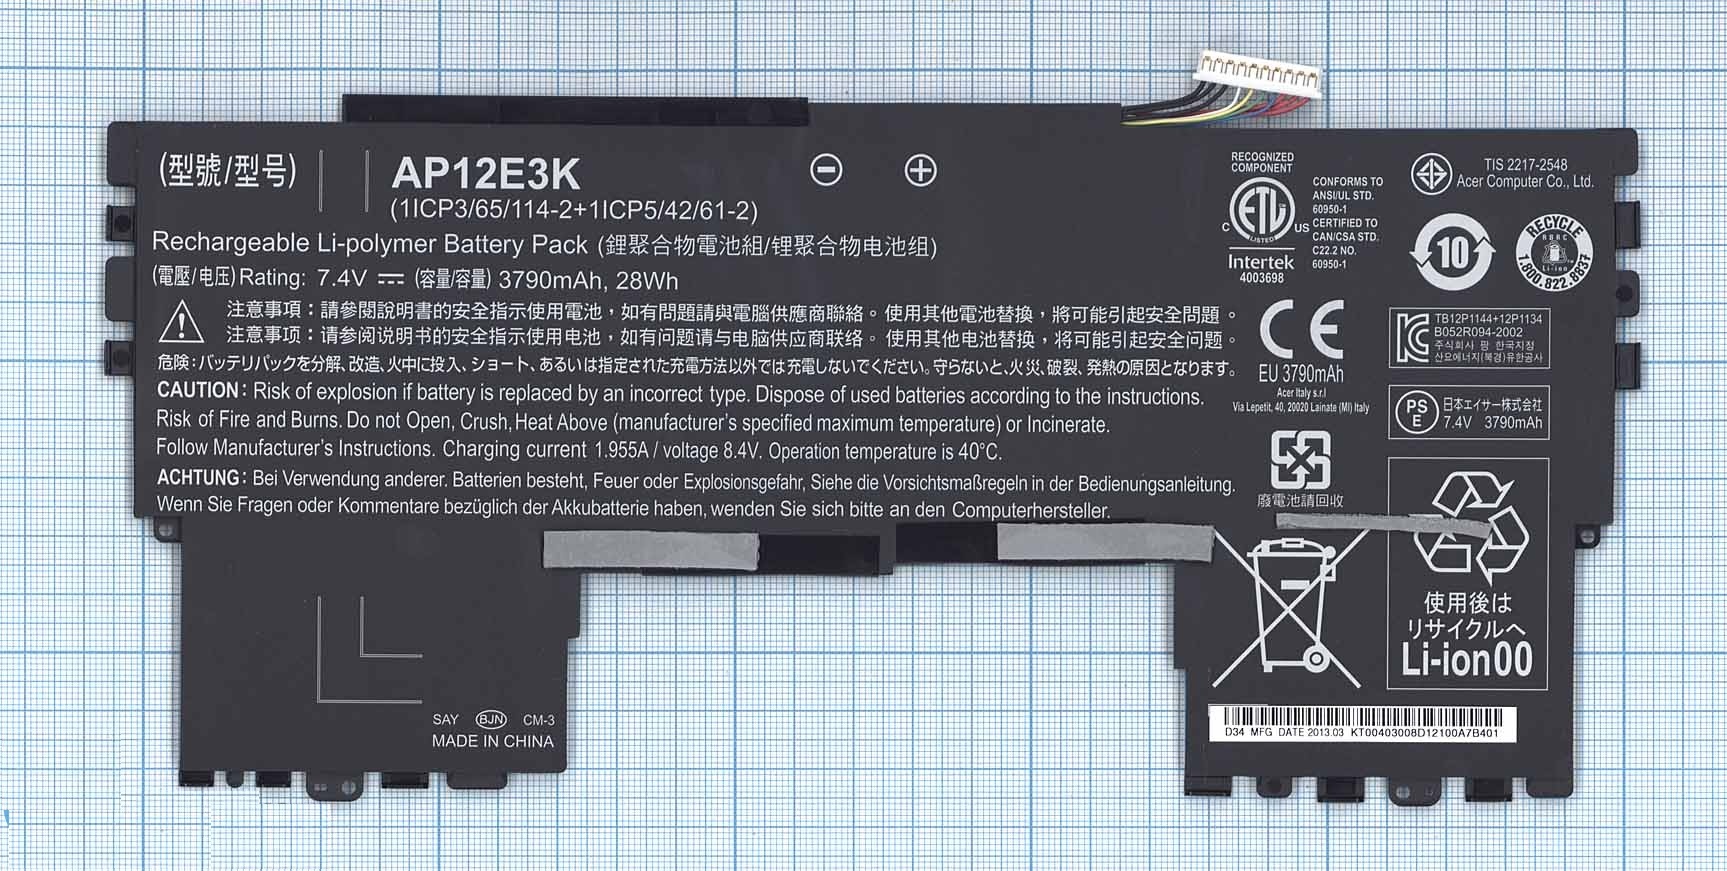   Acer Aspire S7-191, (AP12E3K), 28Wh, 7.4V, 3790mAh